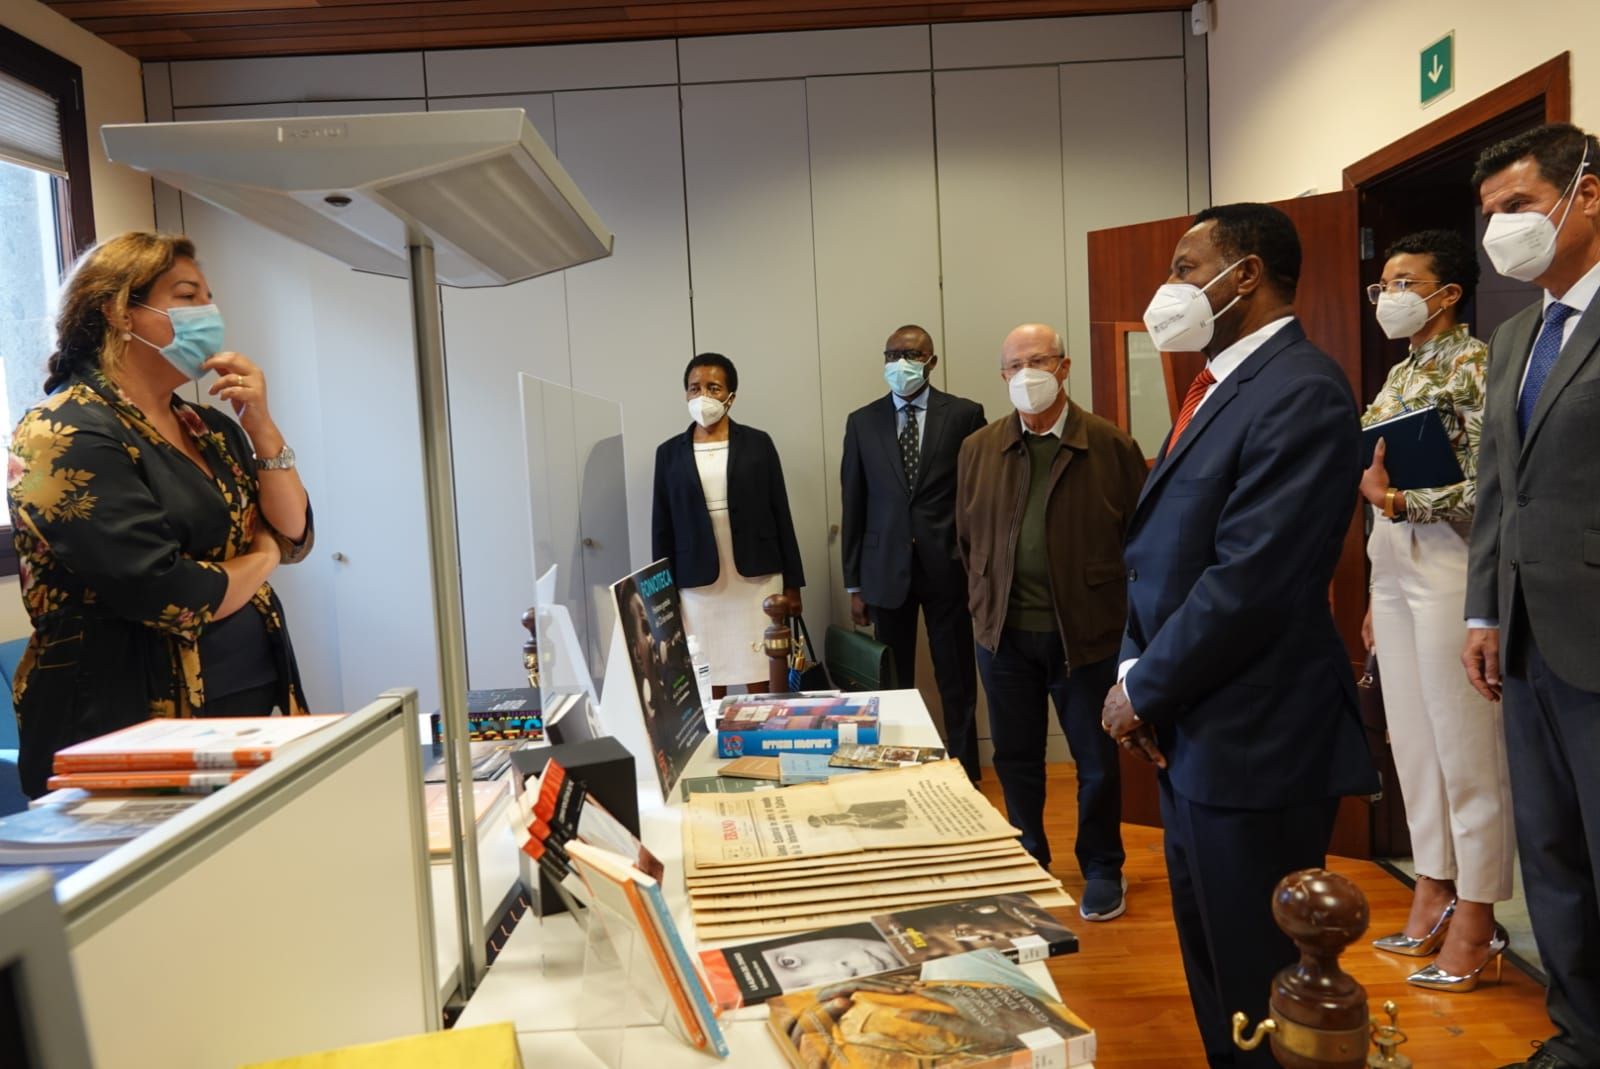 El embajador de Guinea Ecuatorial en España visita Casa África. Aquí la delegación en la mediateca de Casa África, que cuenta con numerosas publicaciones del país.